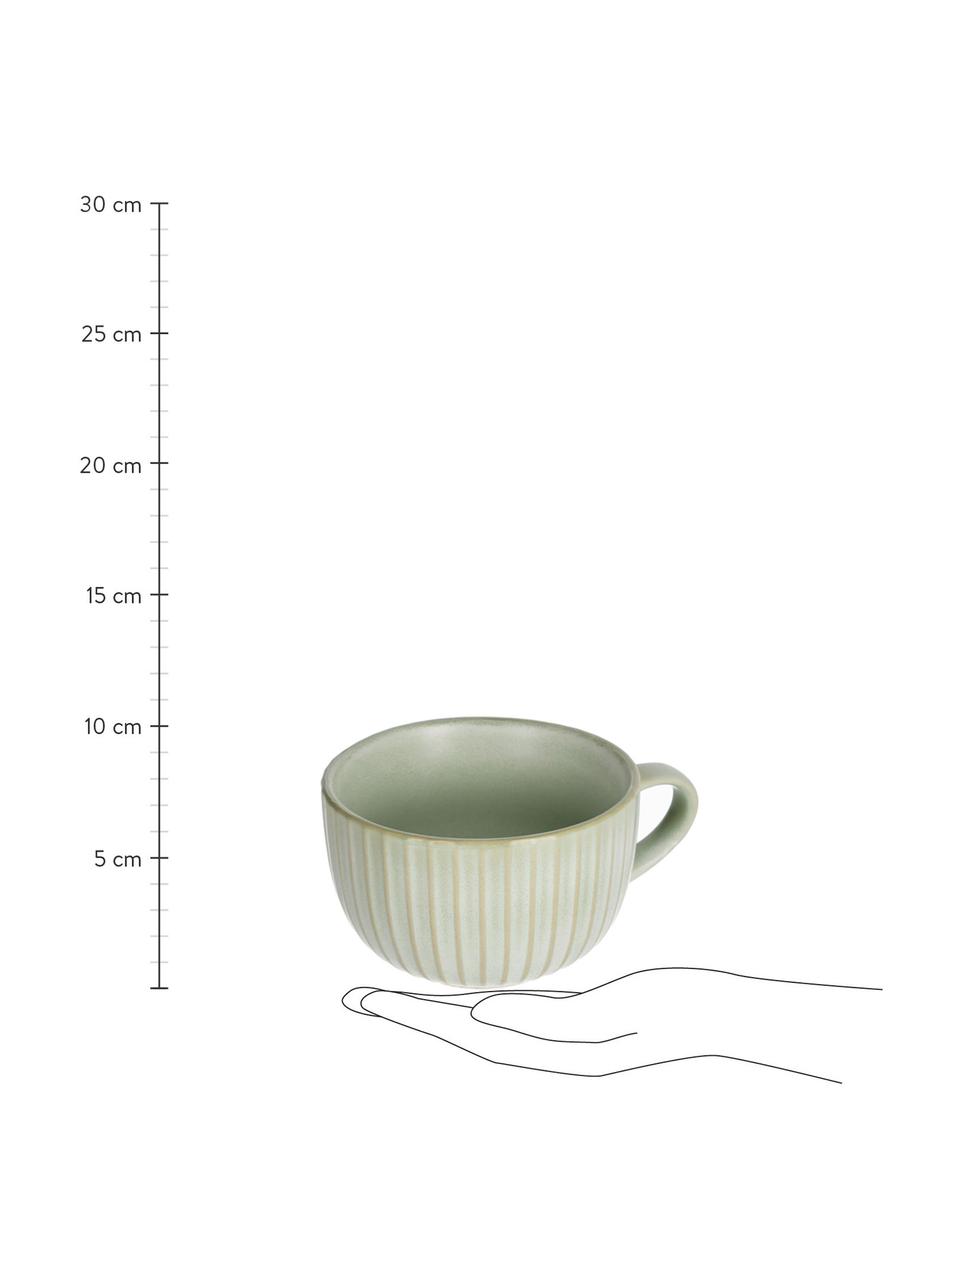 Keramik-Tassen Itziar mit Rillenstruktur, 2 Stück, Keramik, Hellgrün, Ø 12 x H 8 cm, 500 ml